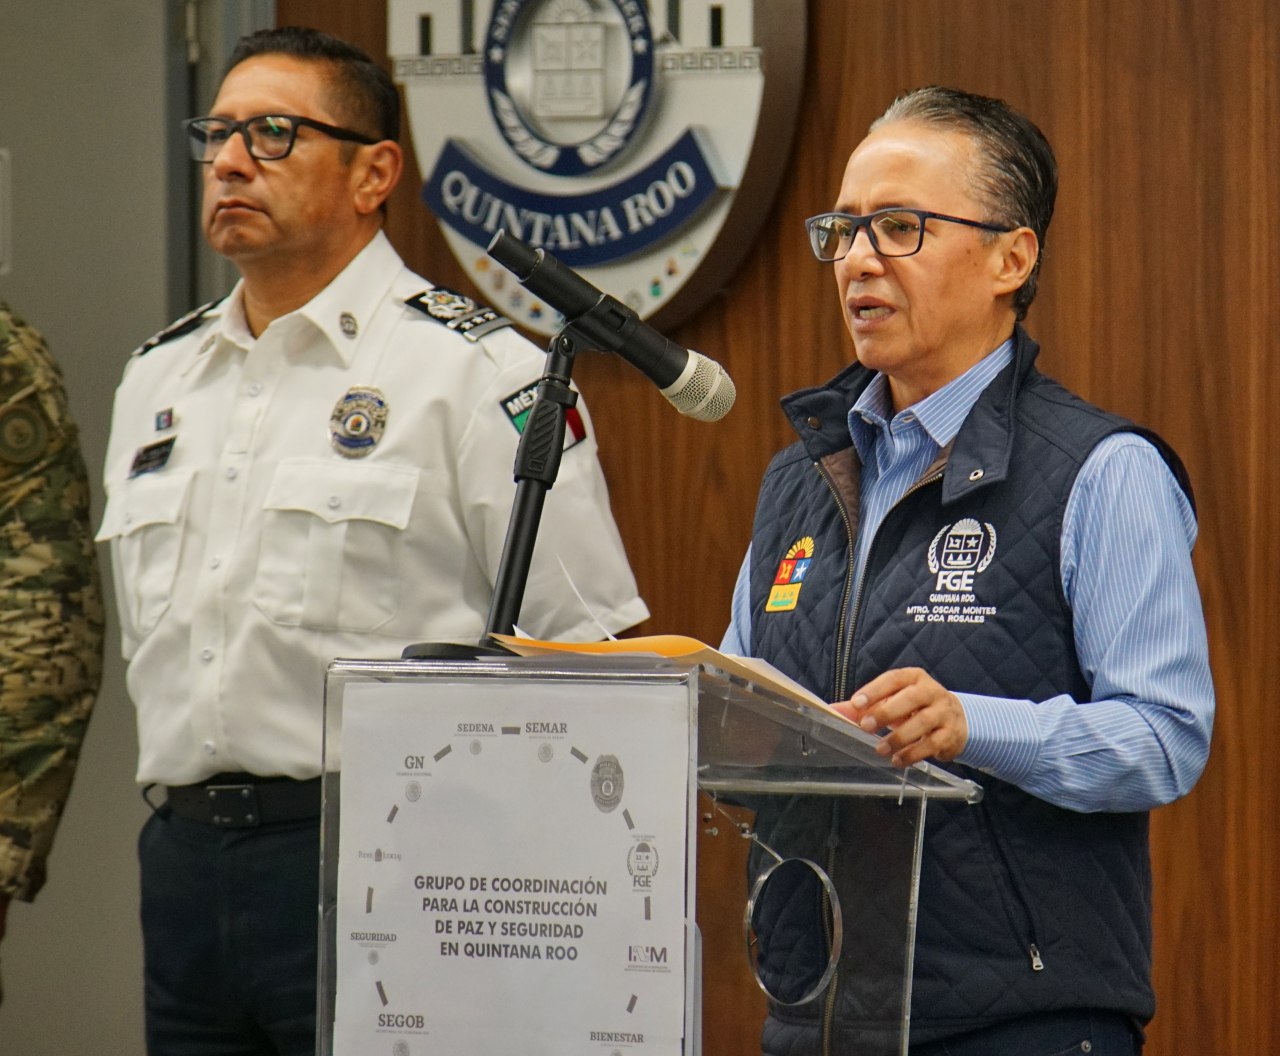 Reconoce Fiscalía de Quintana Roo hackeo; inicia investigación